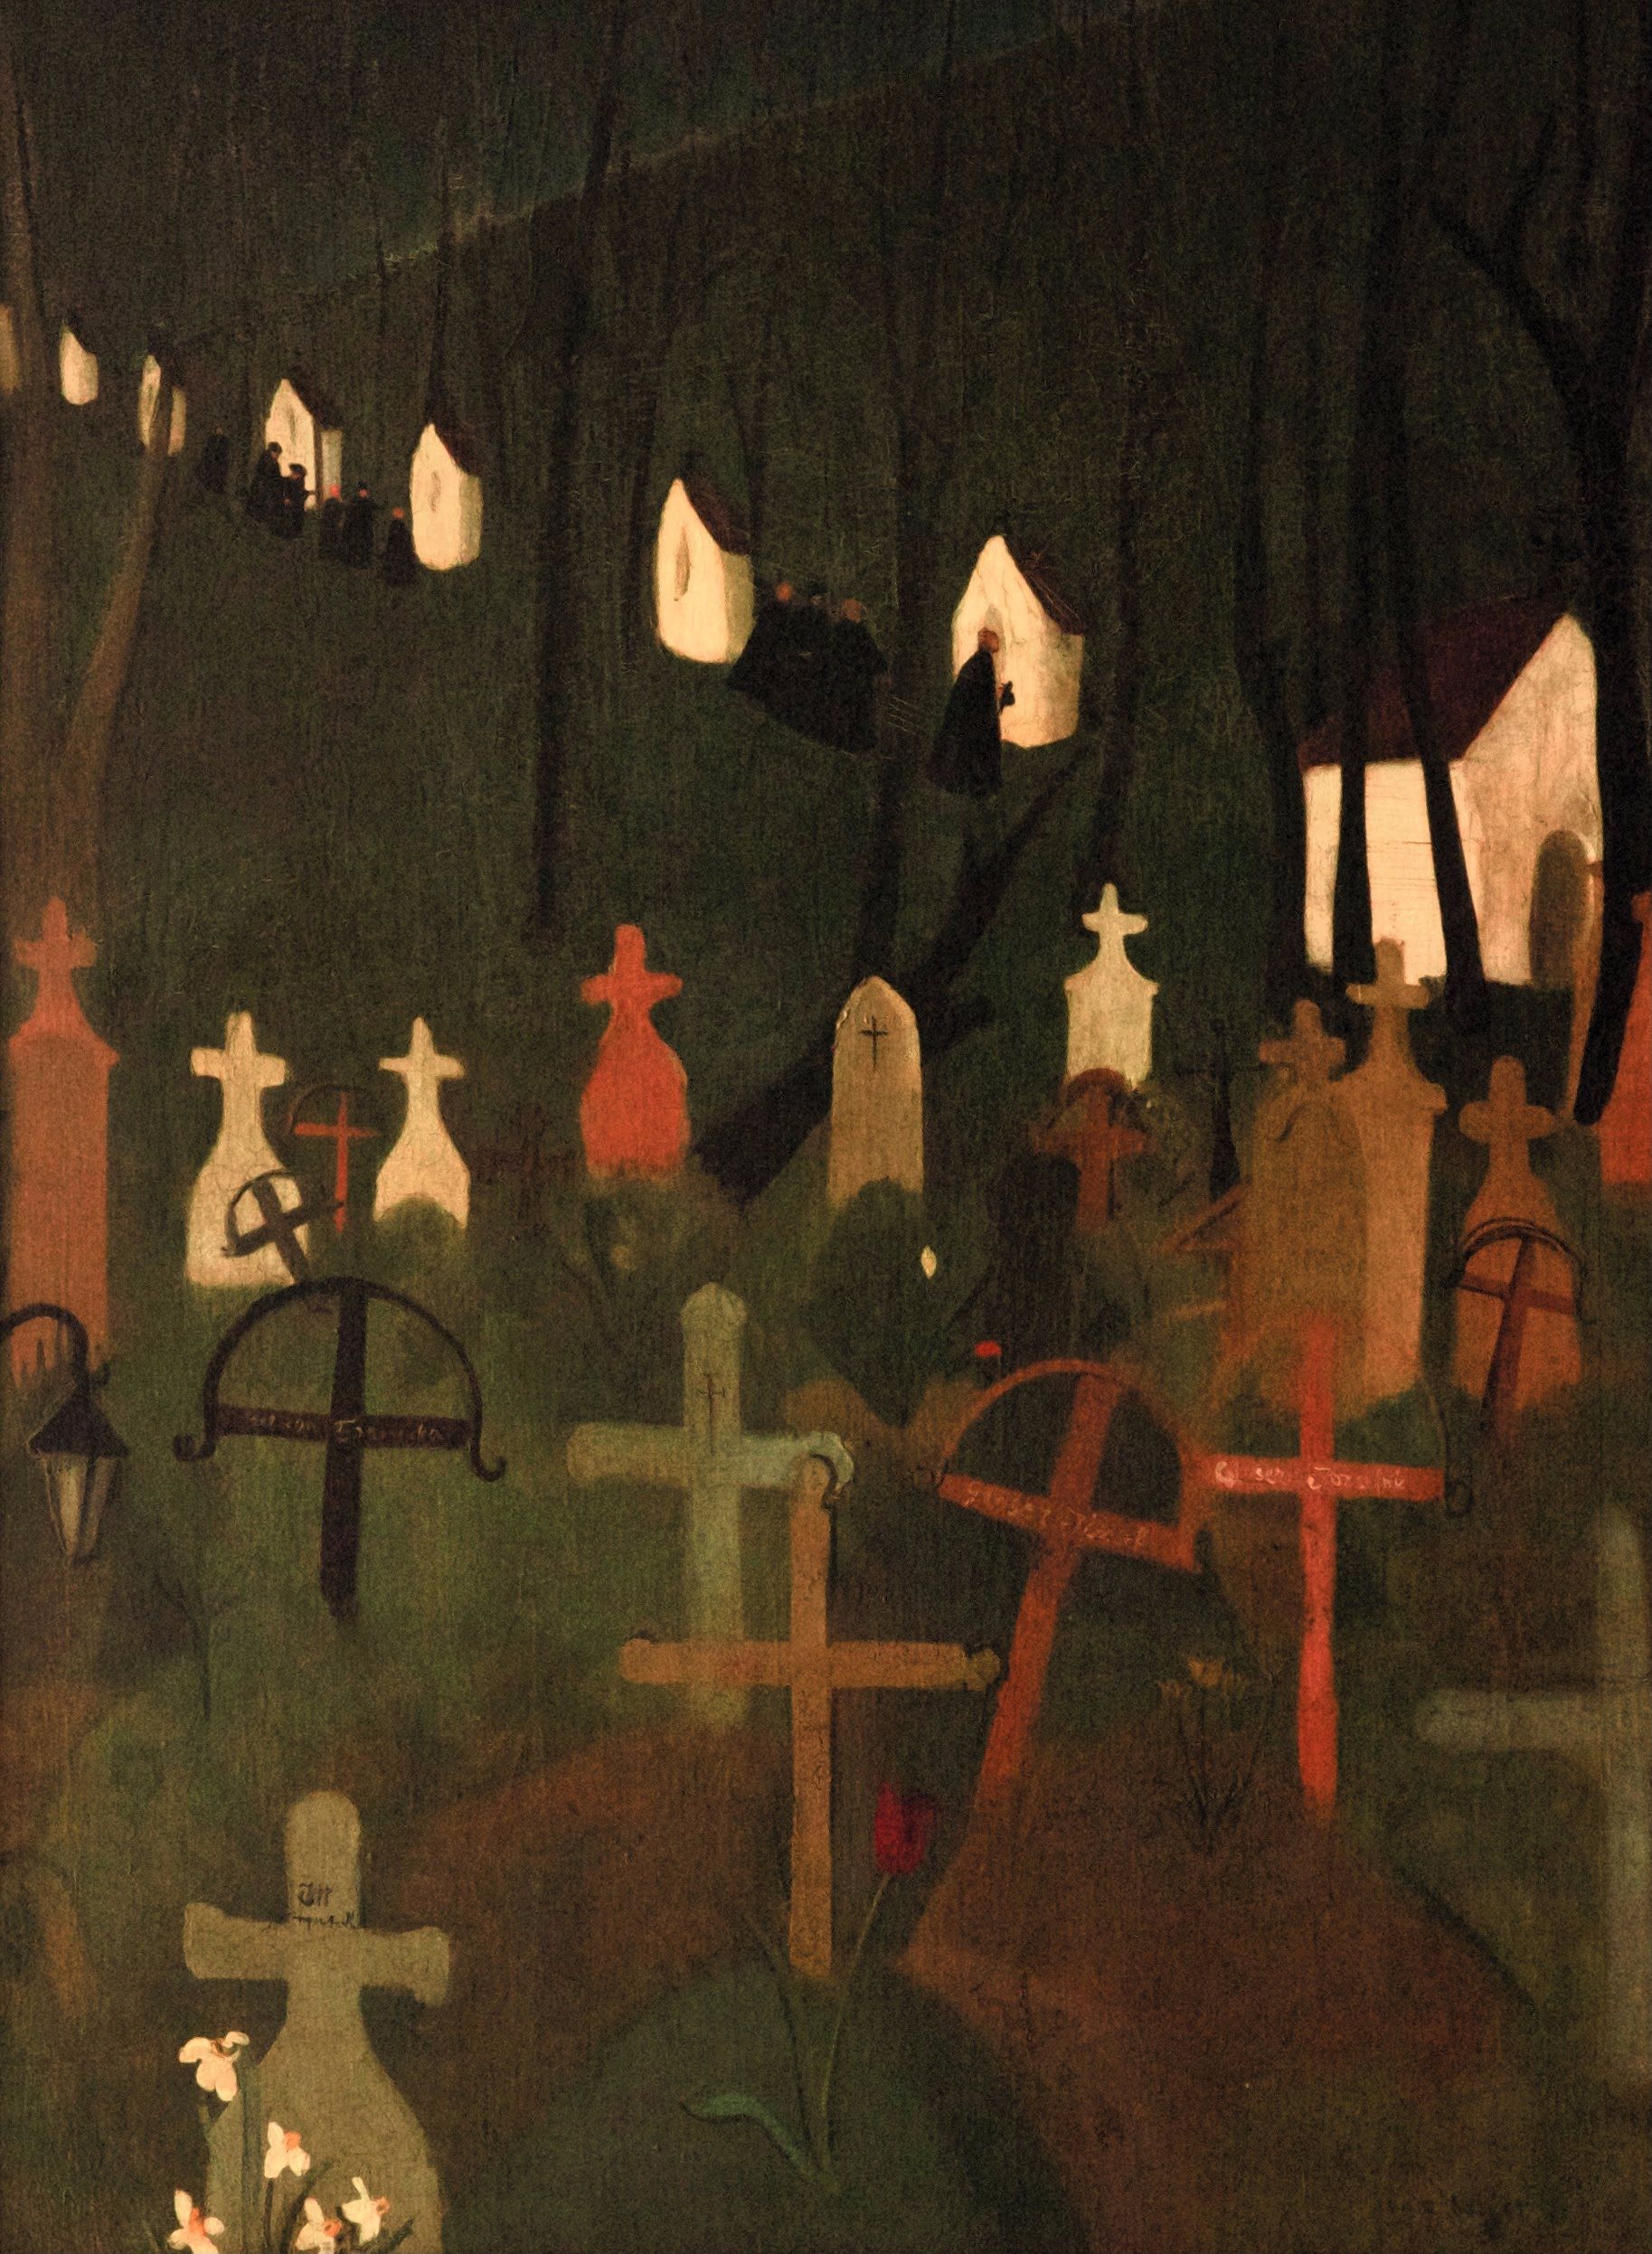 즐거운 묘지(The Merry Cemetery) by 암리타 셔 길 - 1939 - 75 x 100.5 cm 